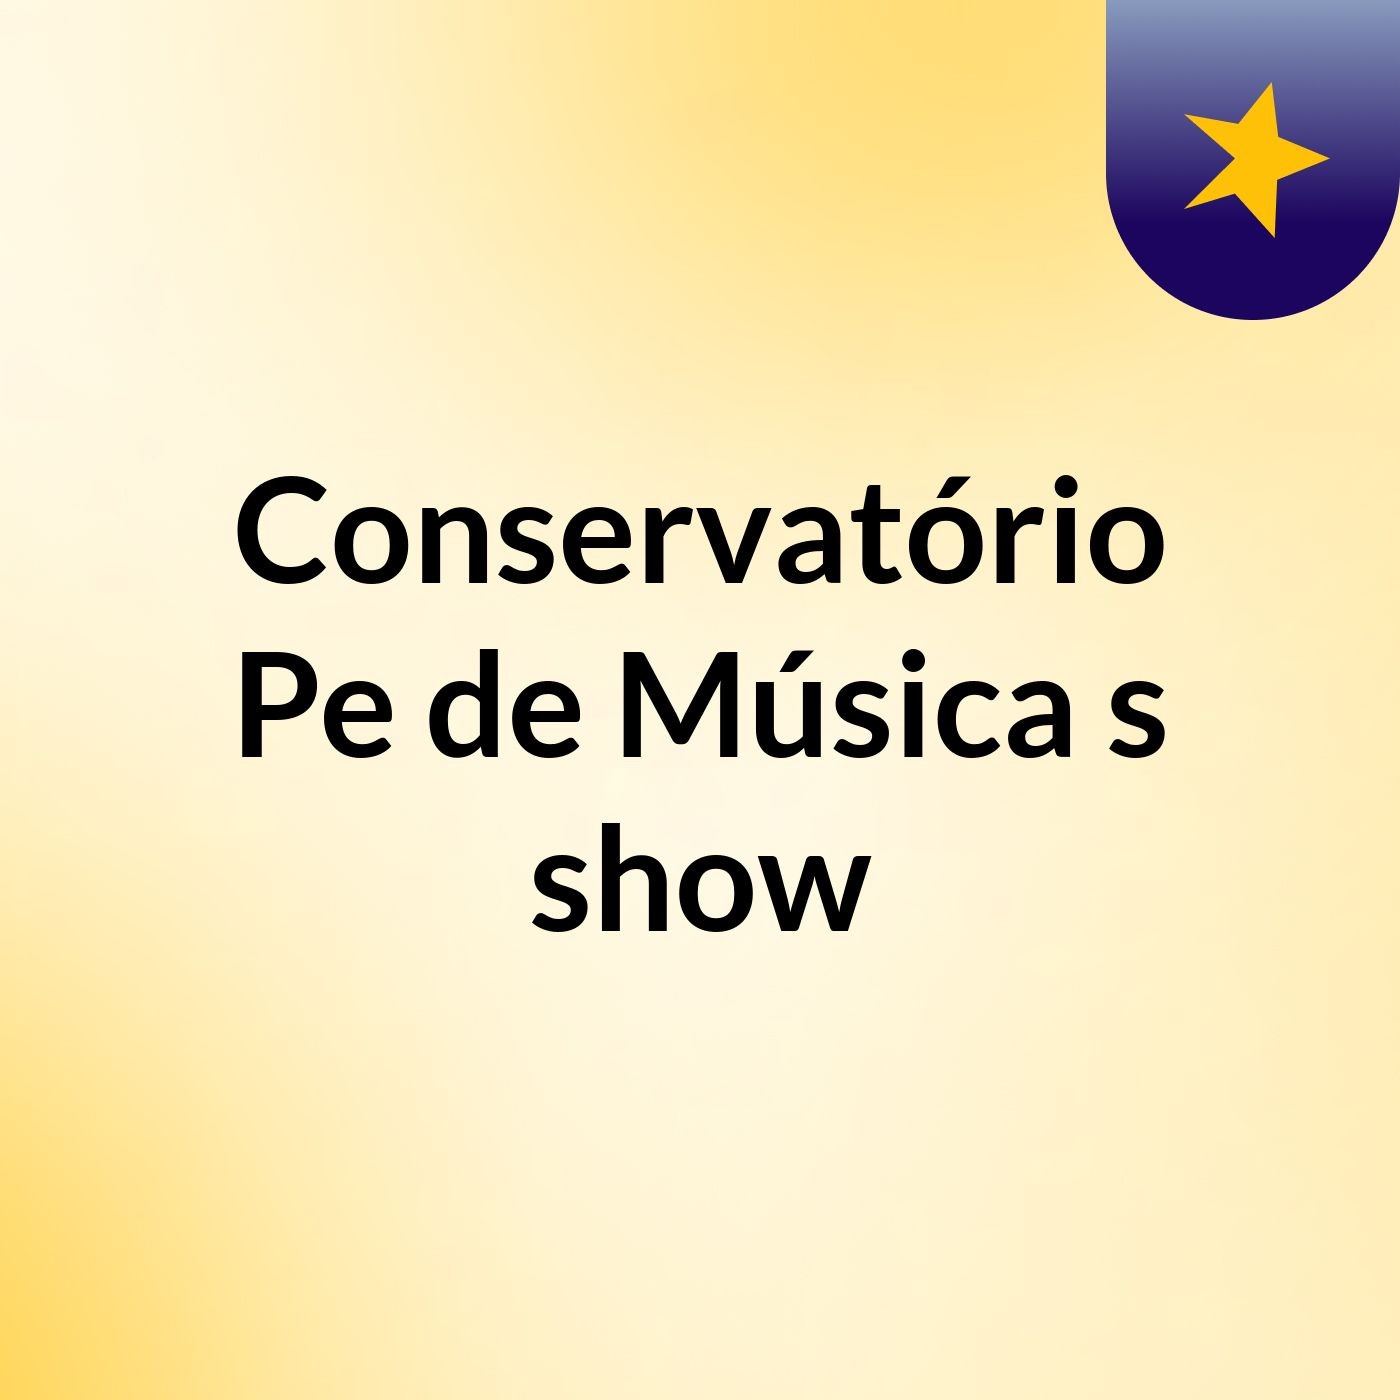 Conservatório Pe de Música's show